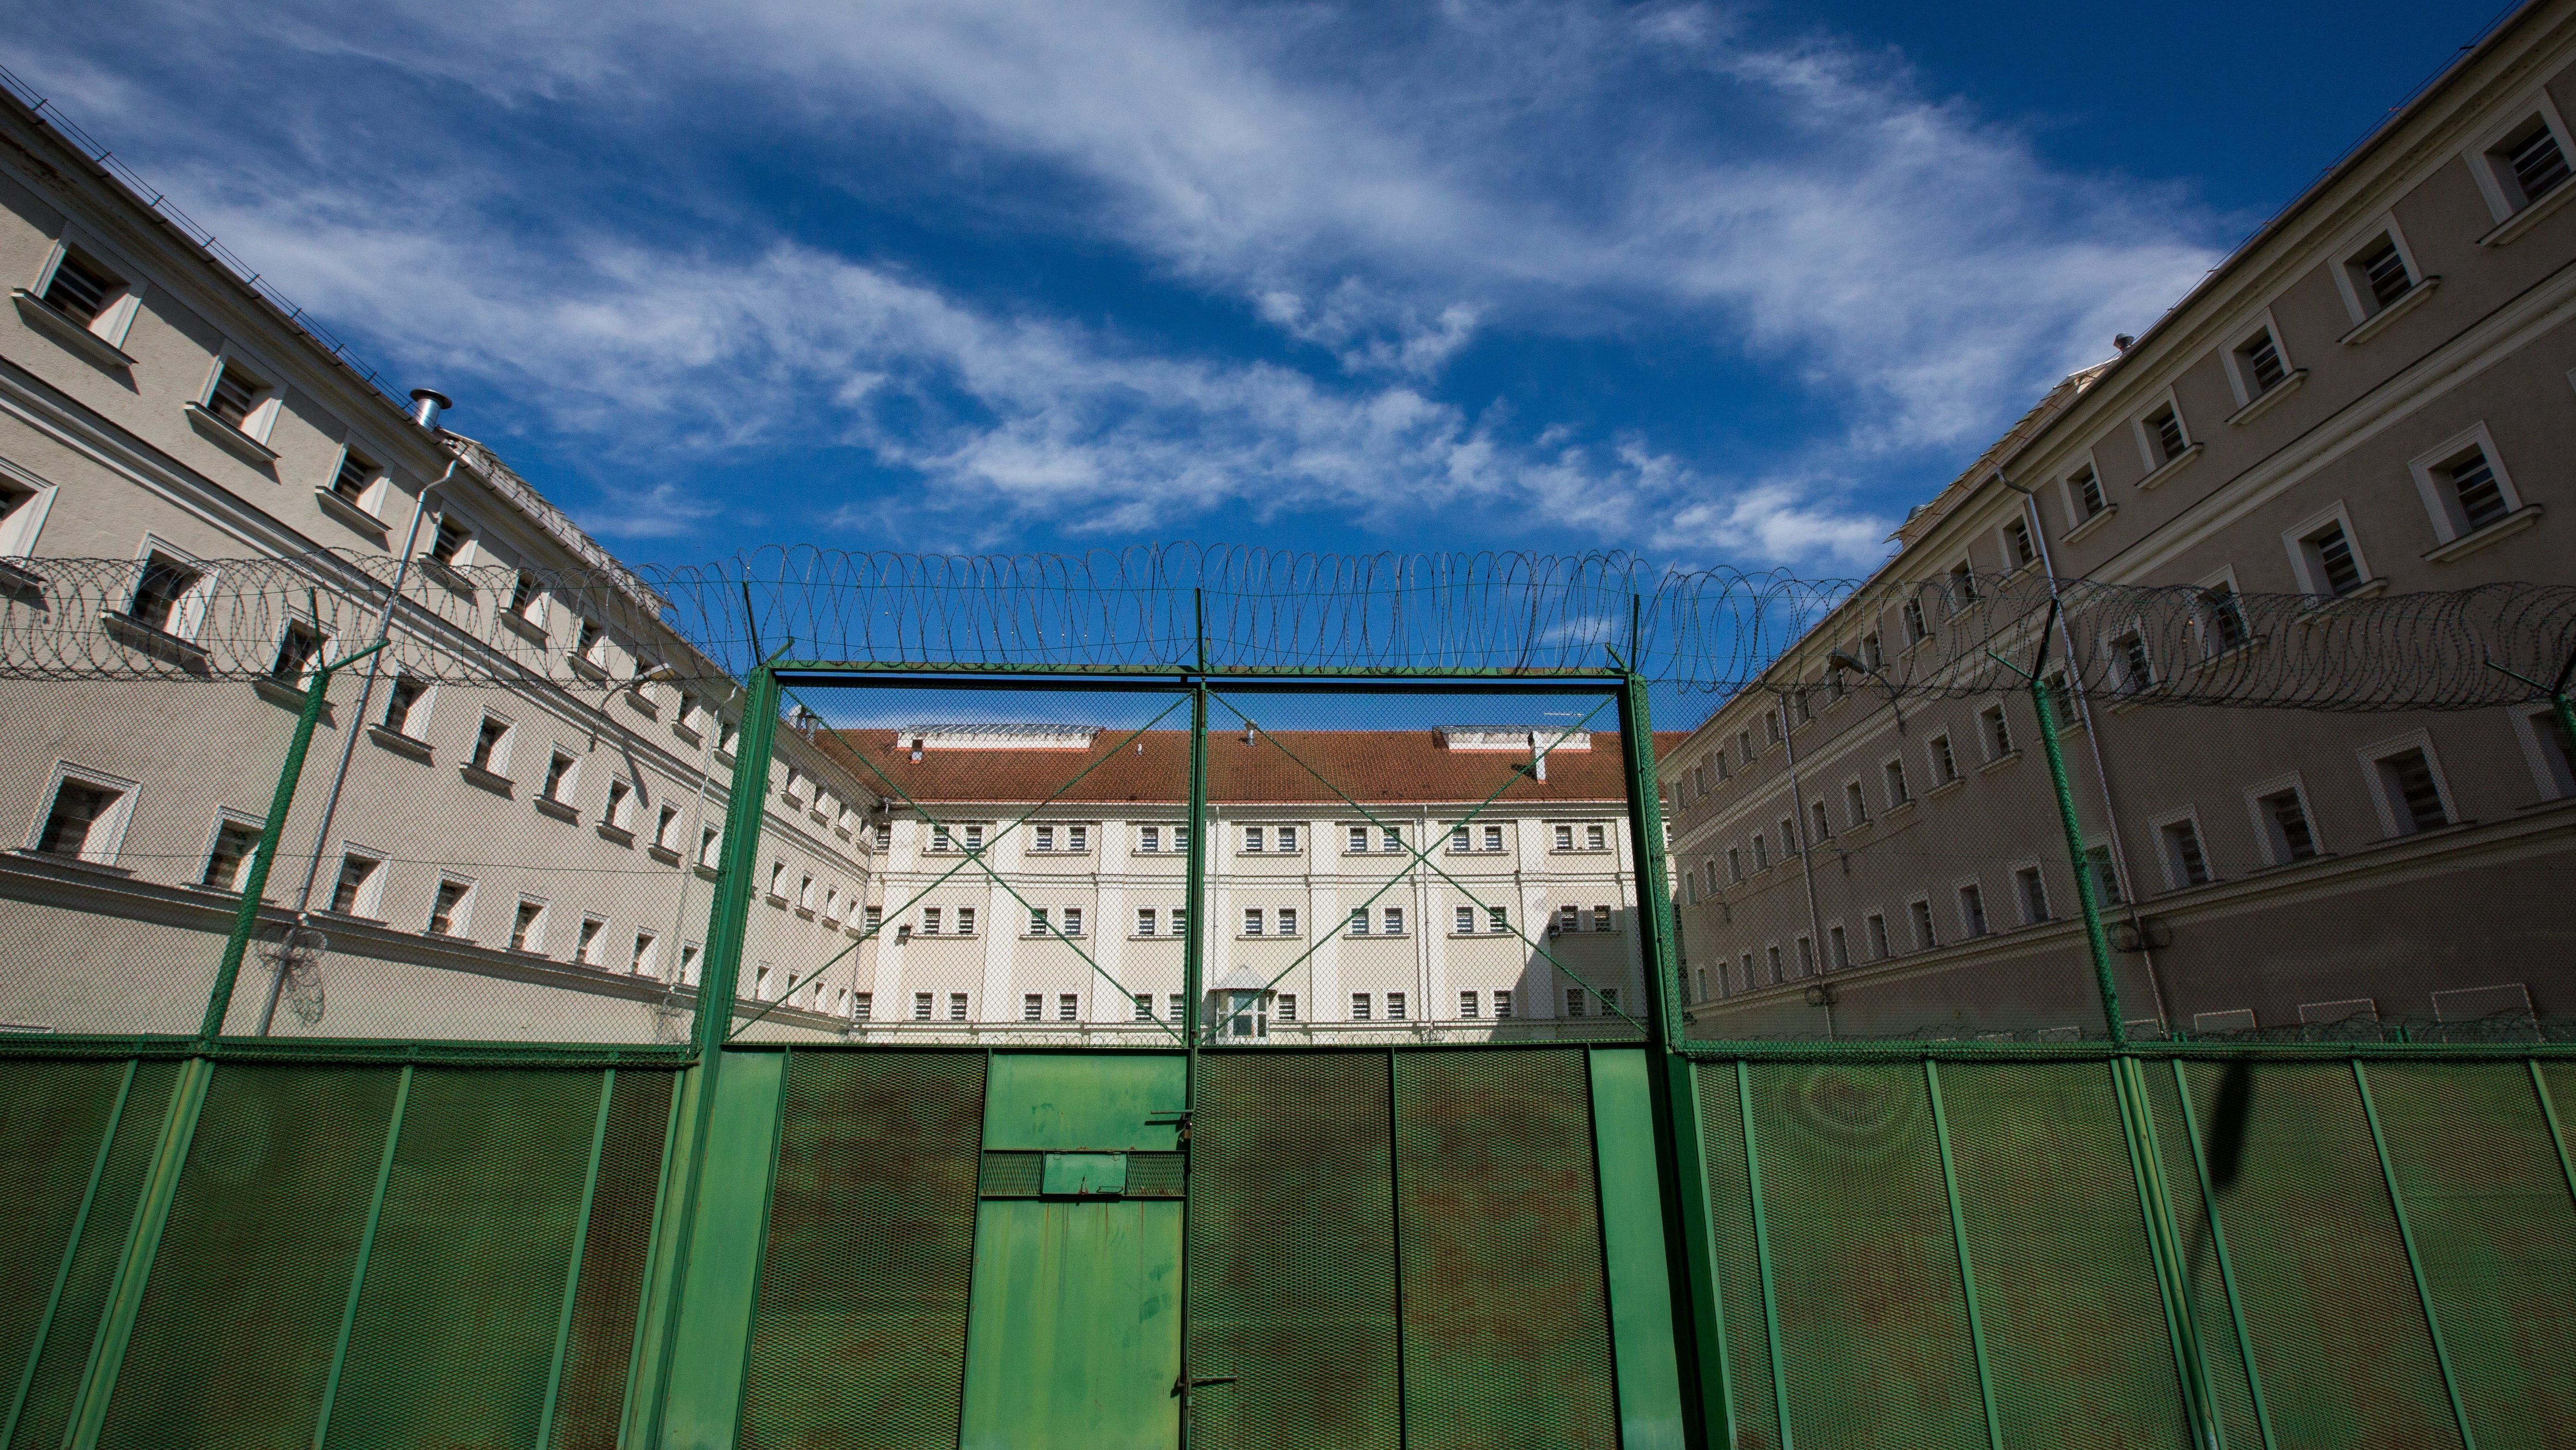 Meghalt egy rab a sopronkőhídai börtönben